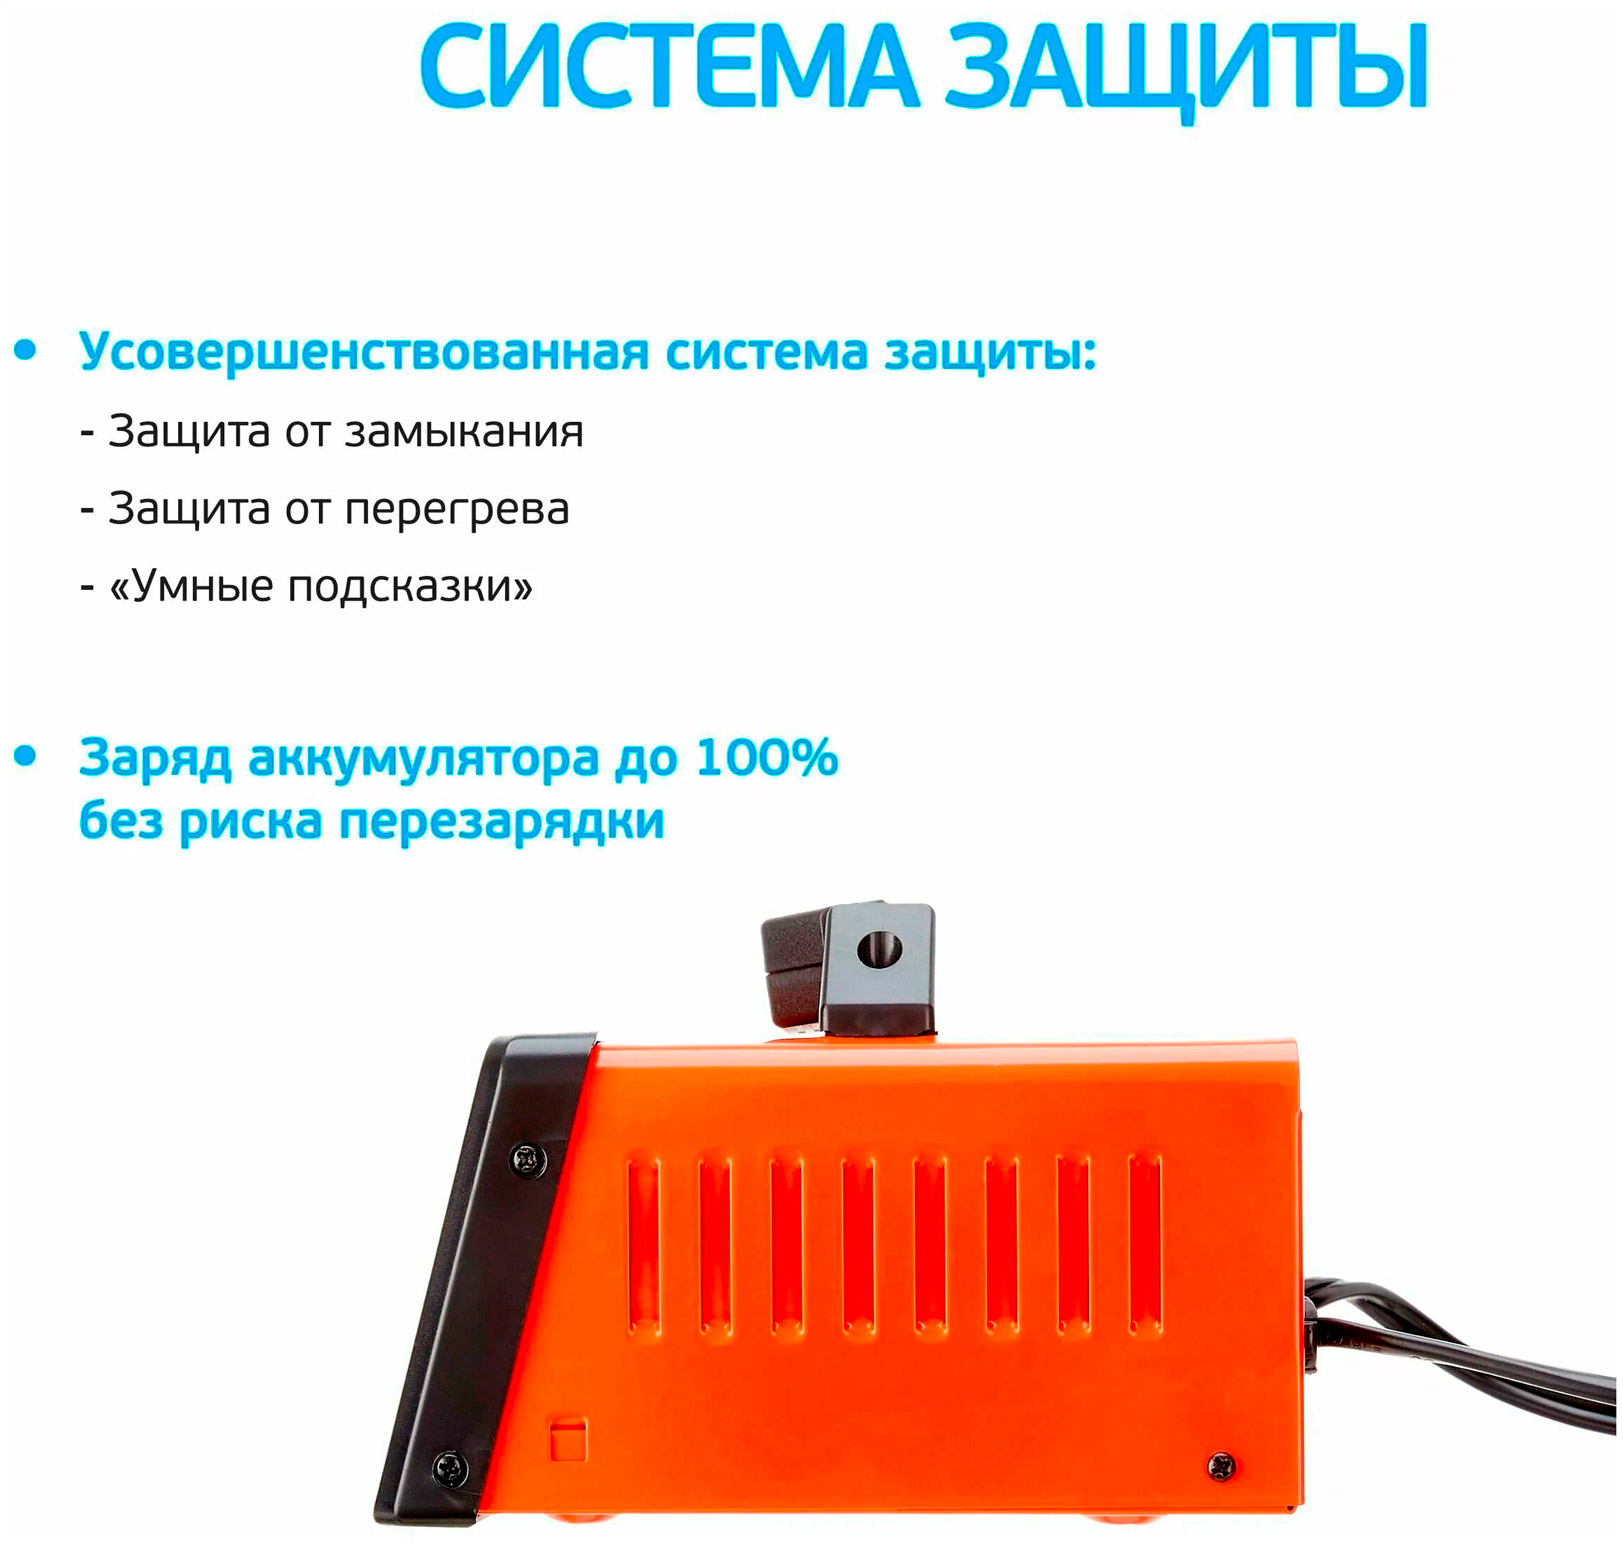 АККУМУЛЯТОРЫ Зарядное устройство для автомобильного аккумулятора AVS BT-6023 (5A) 6/12V